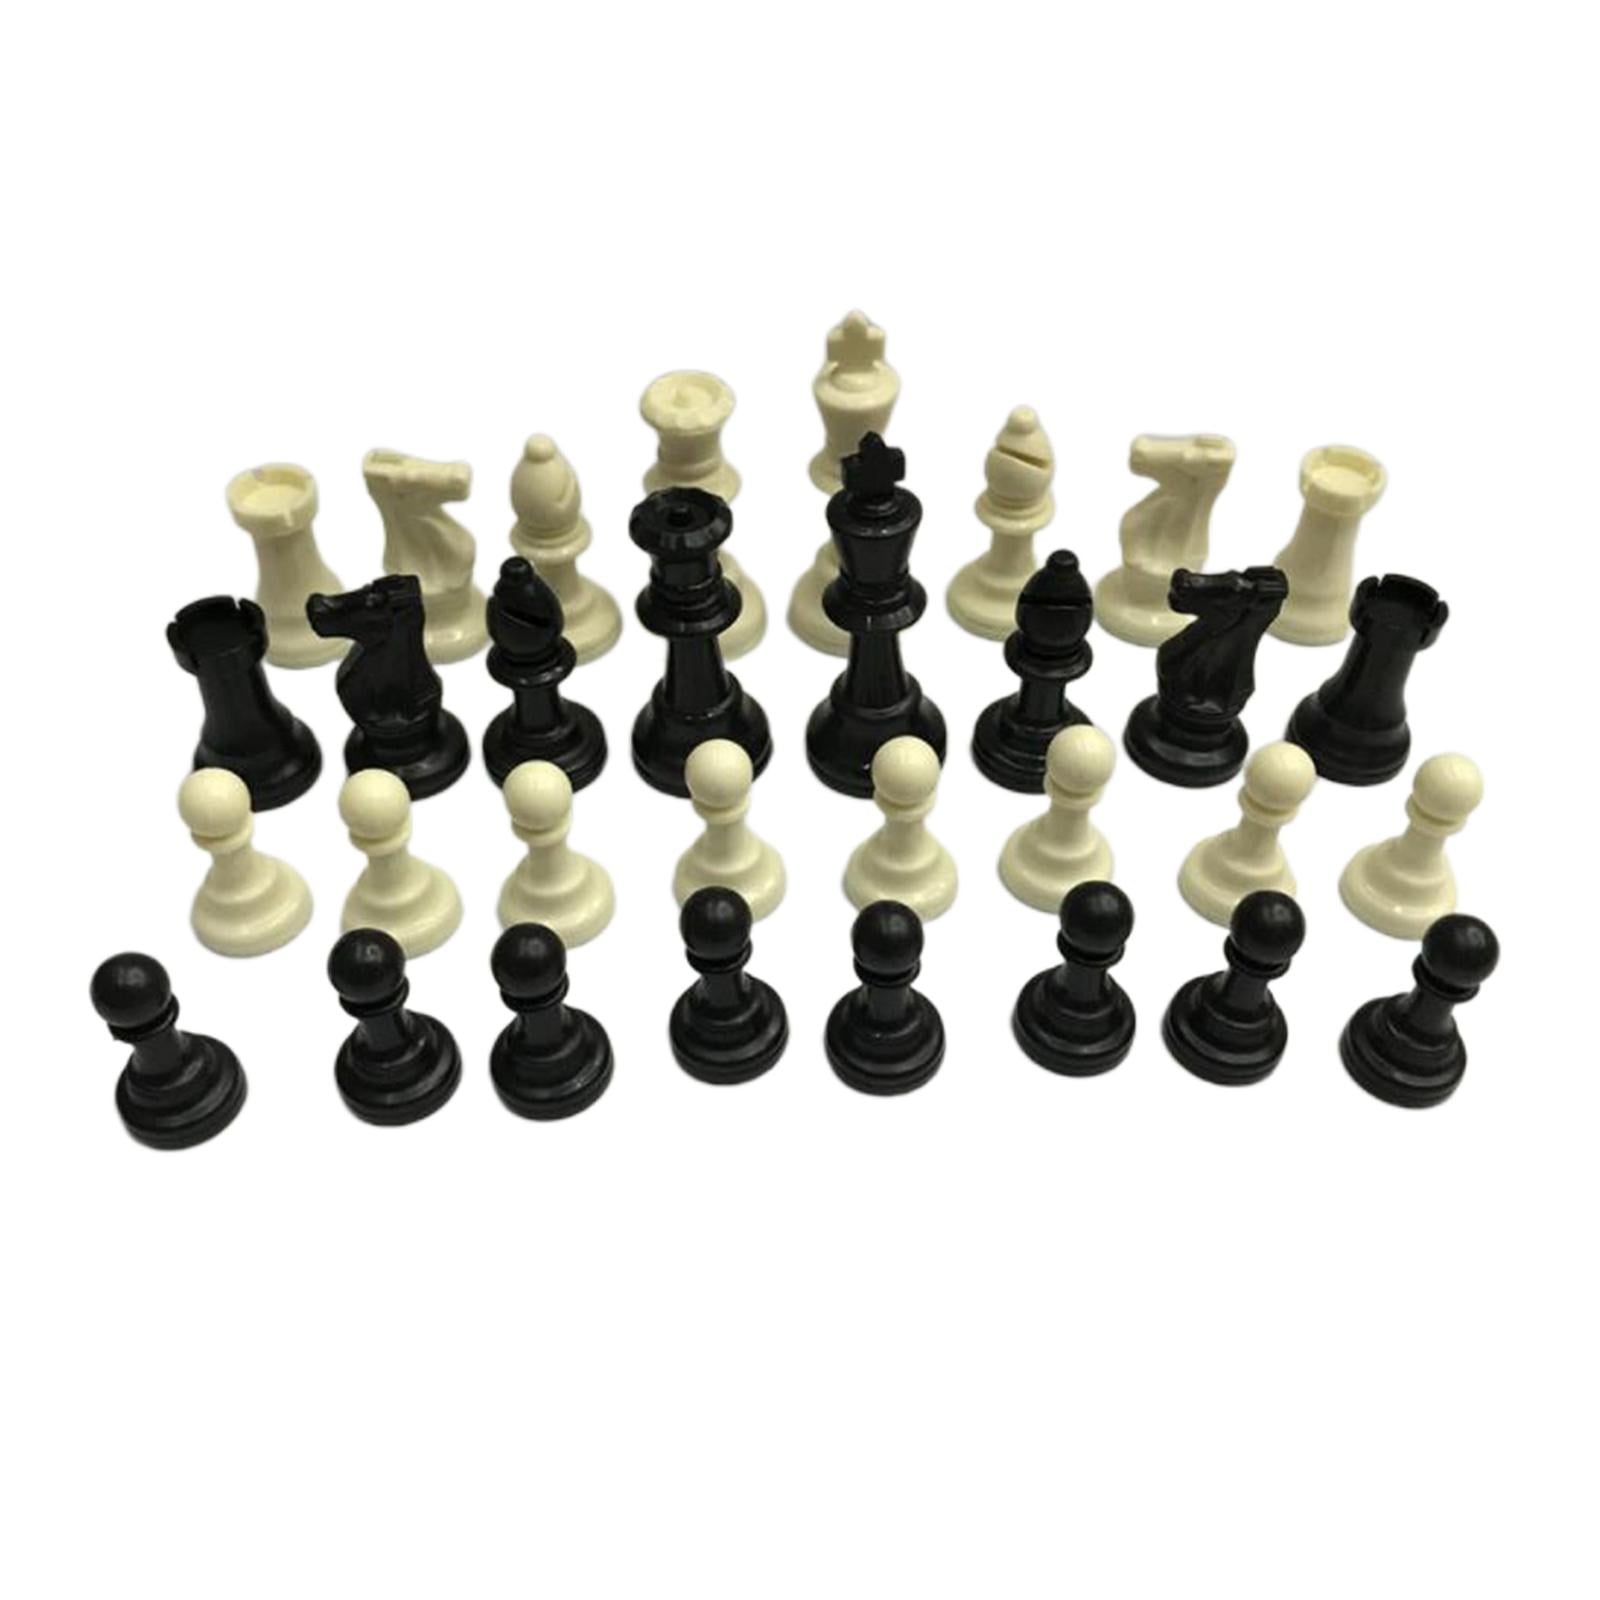 1x Klappschachbrett Portable Set mit Pieces Checkers International Chess 